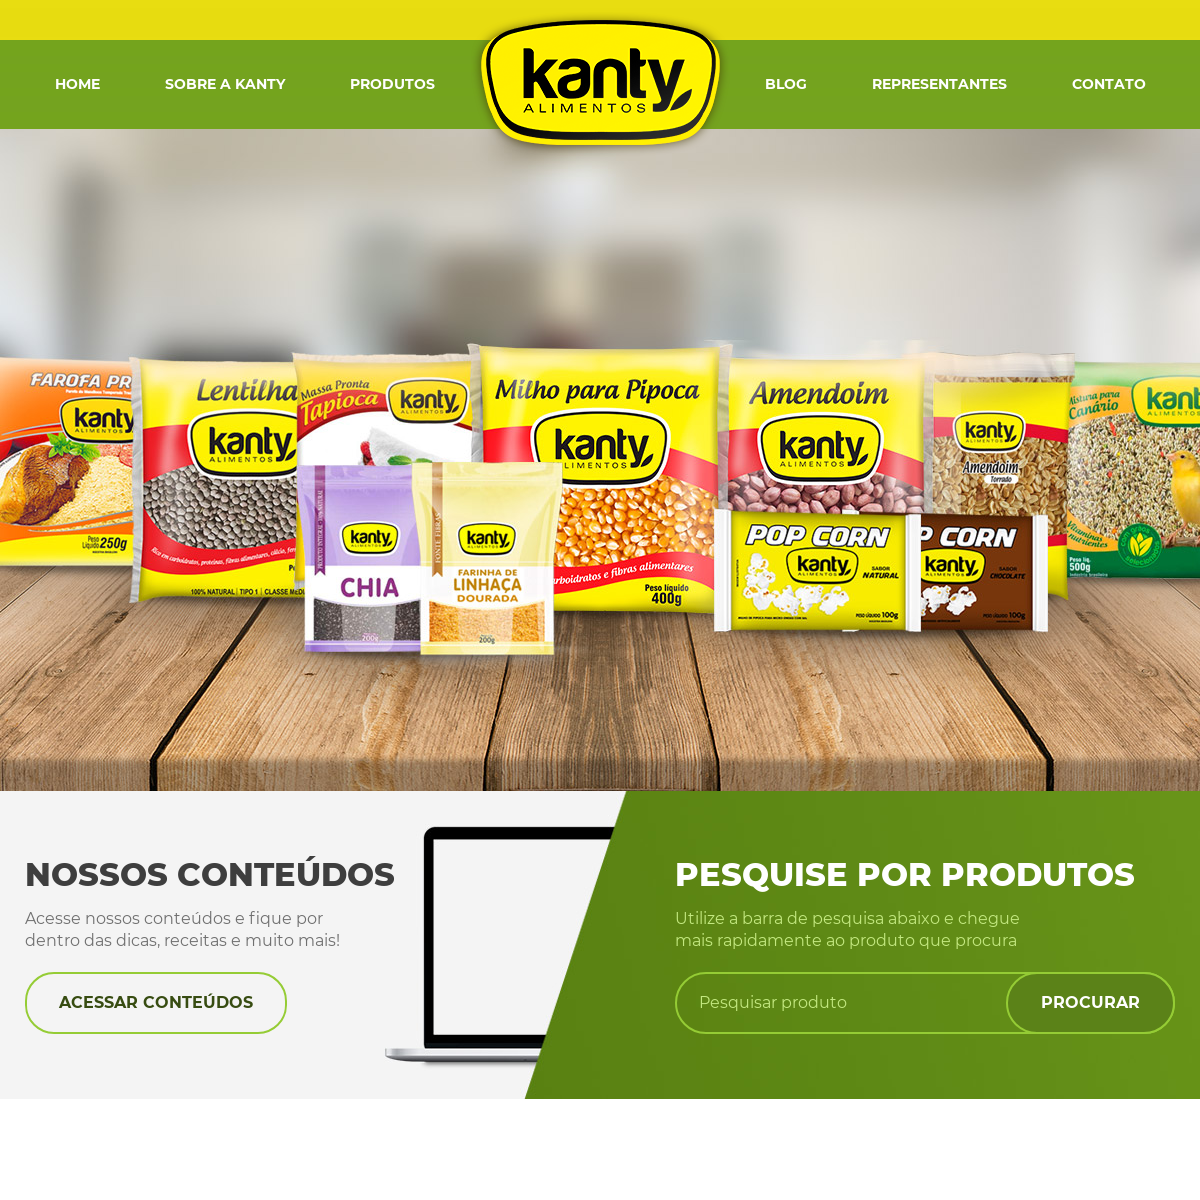 A complete backup of kanty.com.br